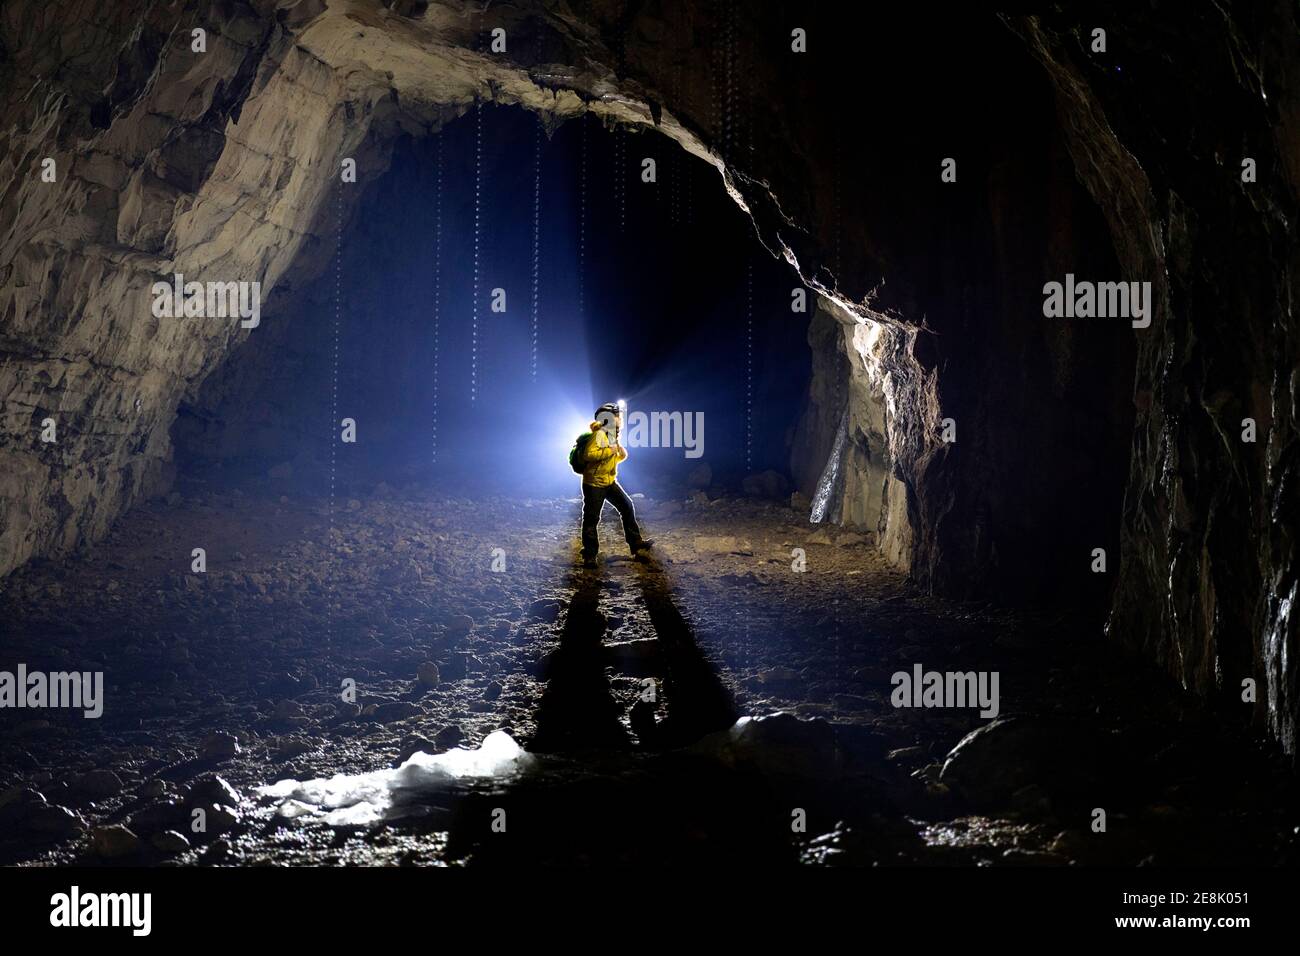 Niño de 11 años de edad de pie dentro de una cueva, iluminado por una luz de fondo, estalagmitas fundidas hechas de hielo en el frente, Eslovenia Foto de stock